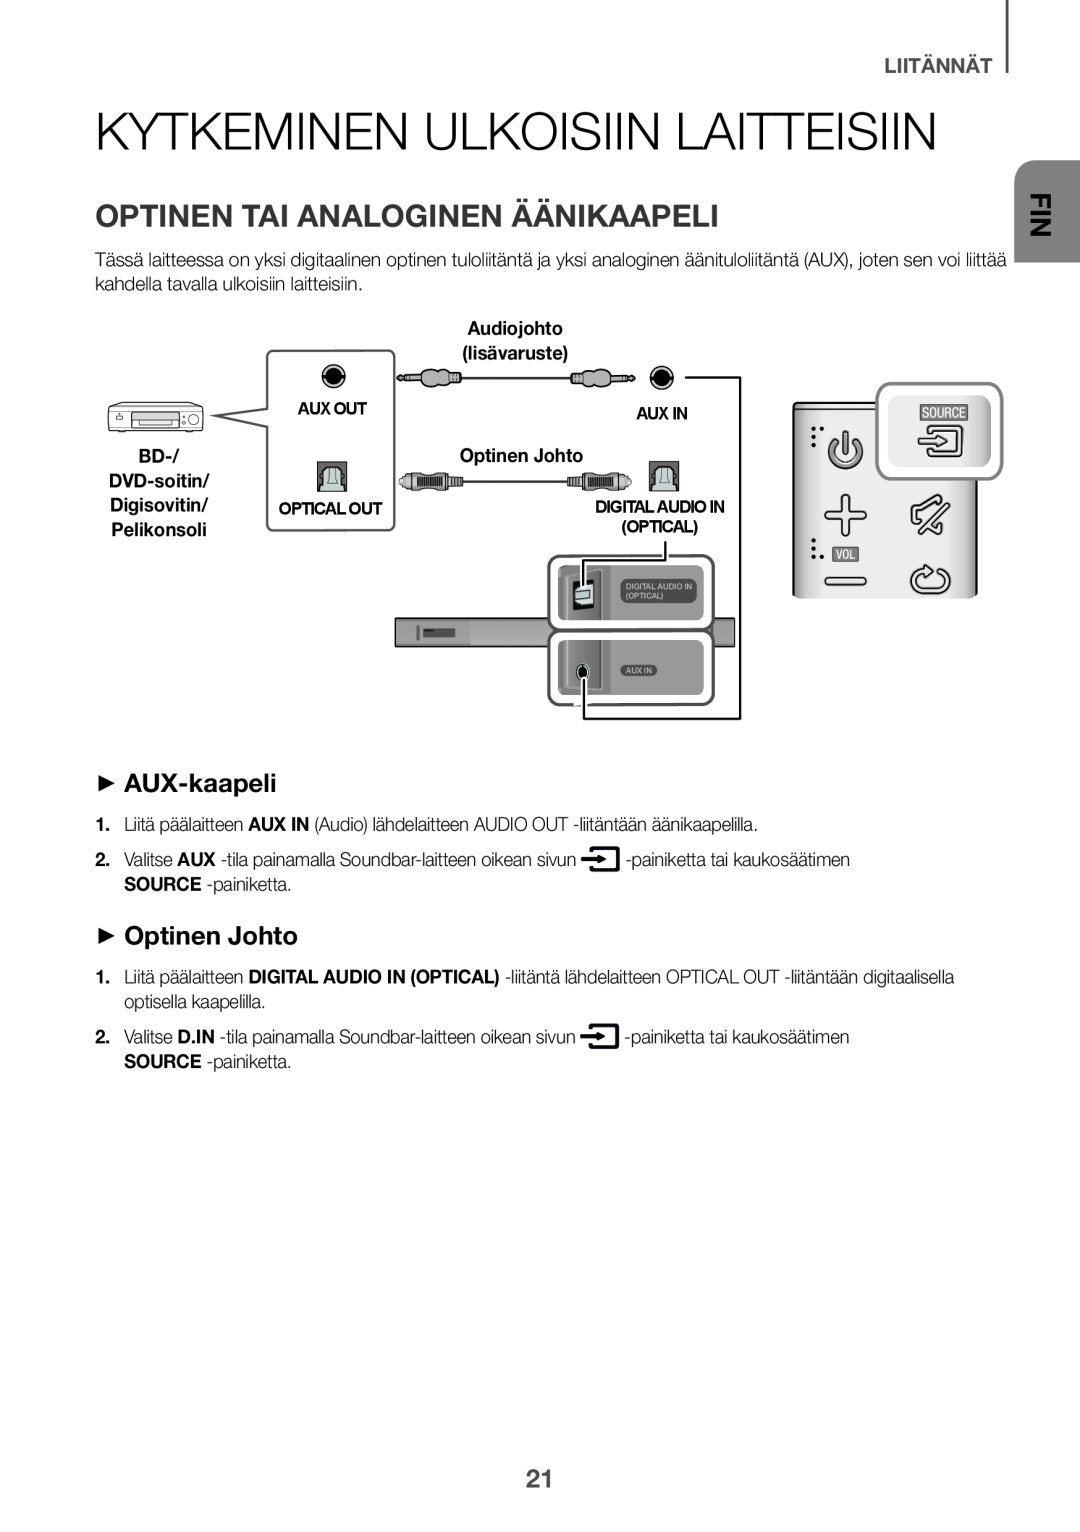 Samsung HW-K650/ZF Kytkeminen ulkoisiin laitteisiin, Optinen tai analoginen äänikaapeli, ++AUX-kaapeli, ++Optinen Johto 